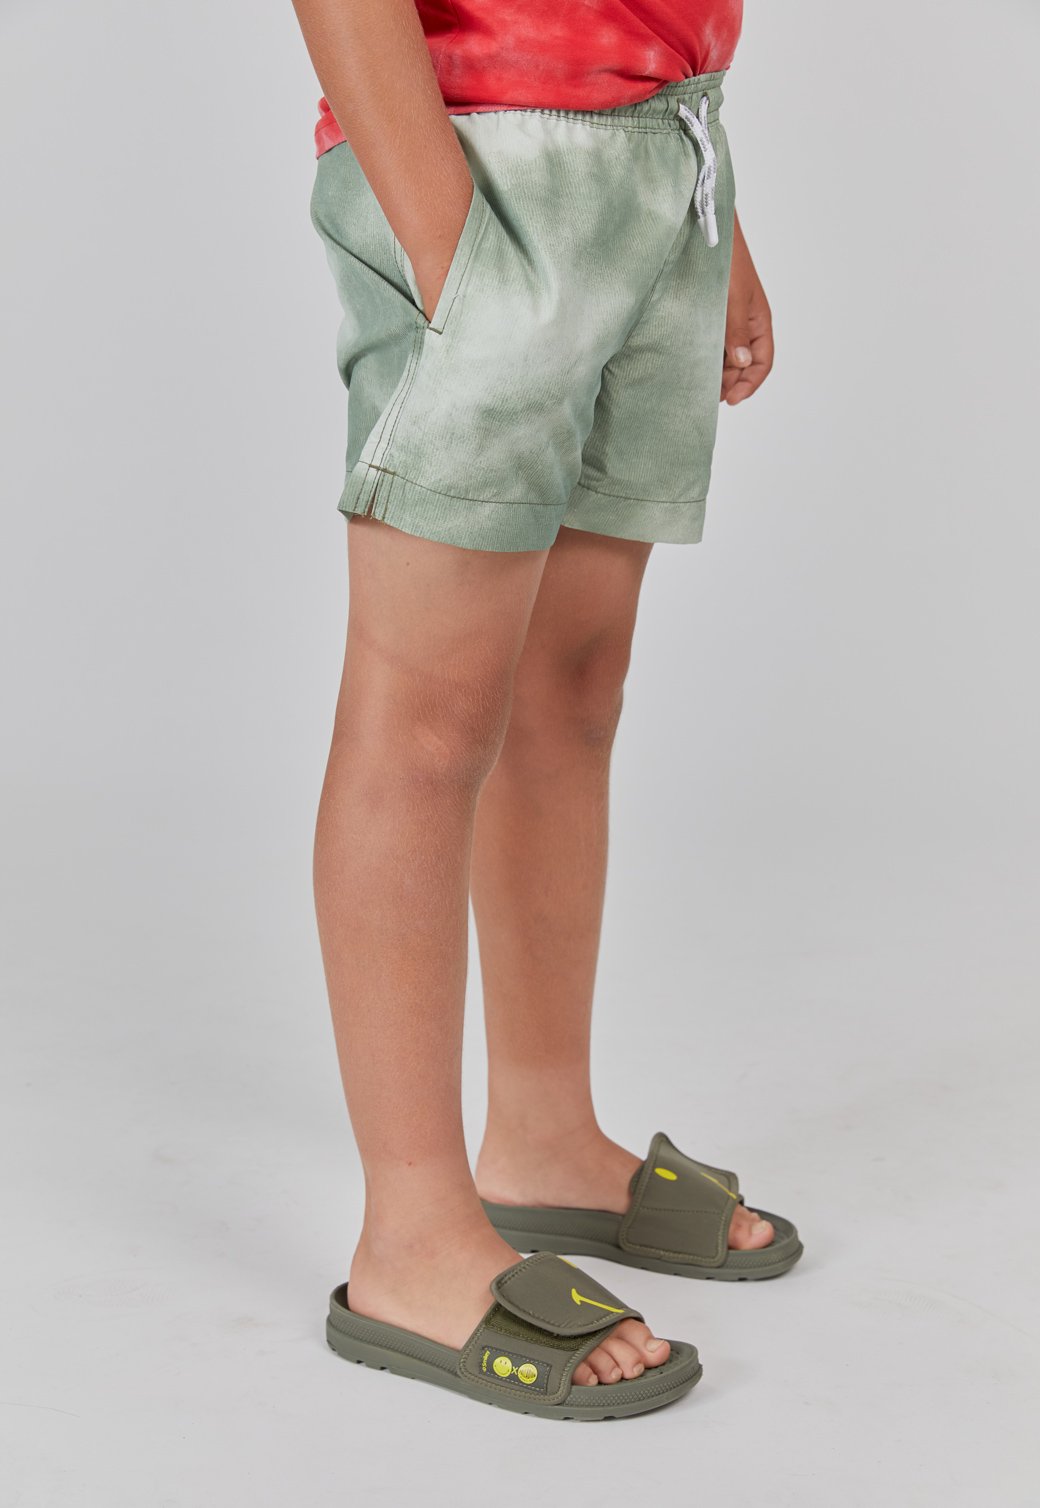 מכנסי בגד ים בהדפס טאי דאי ילדים - ירוק